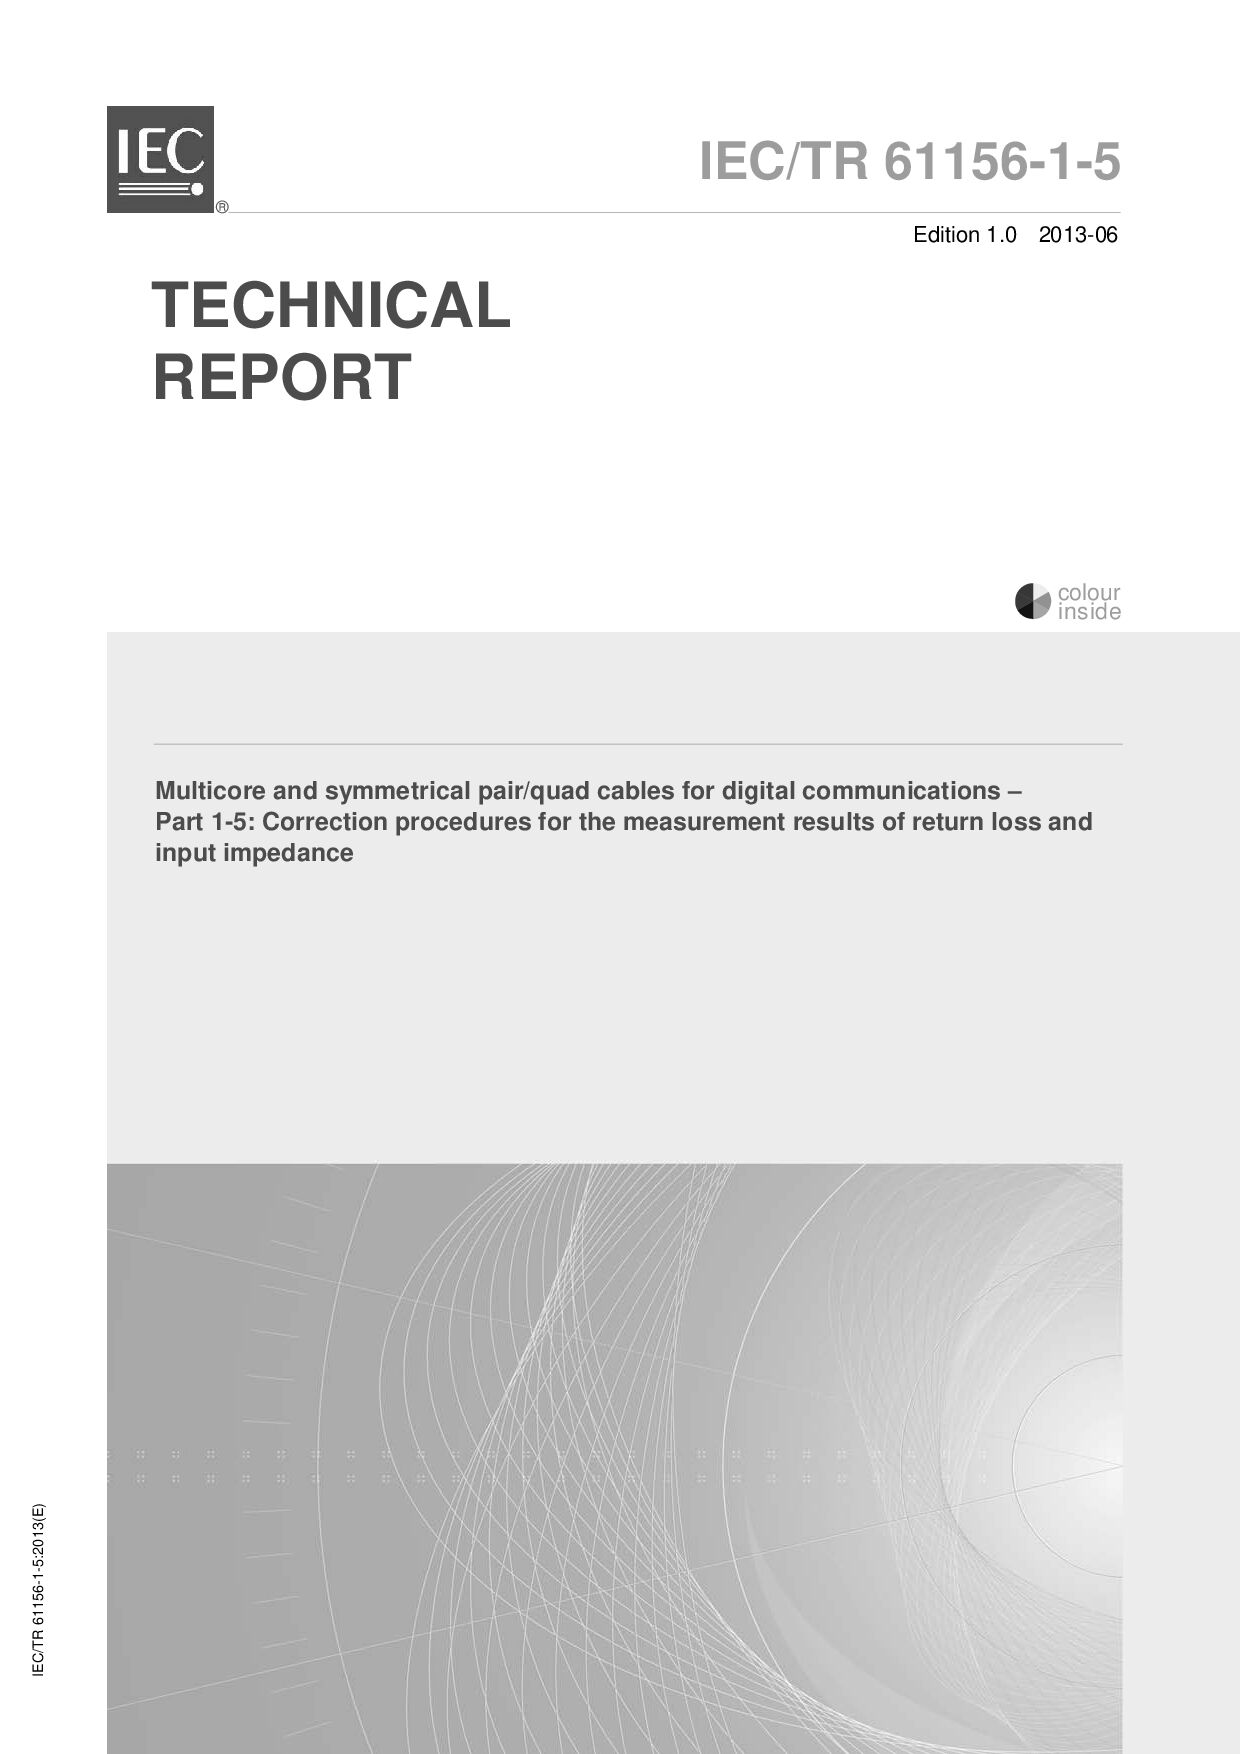 IEC TR 61156-1-5:2013